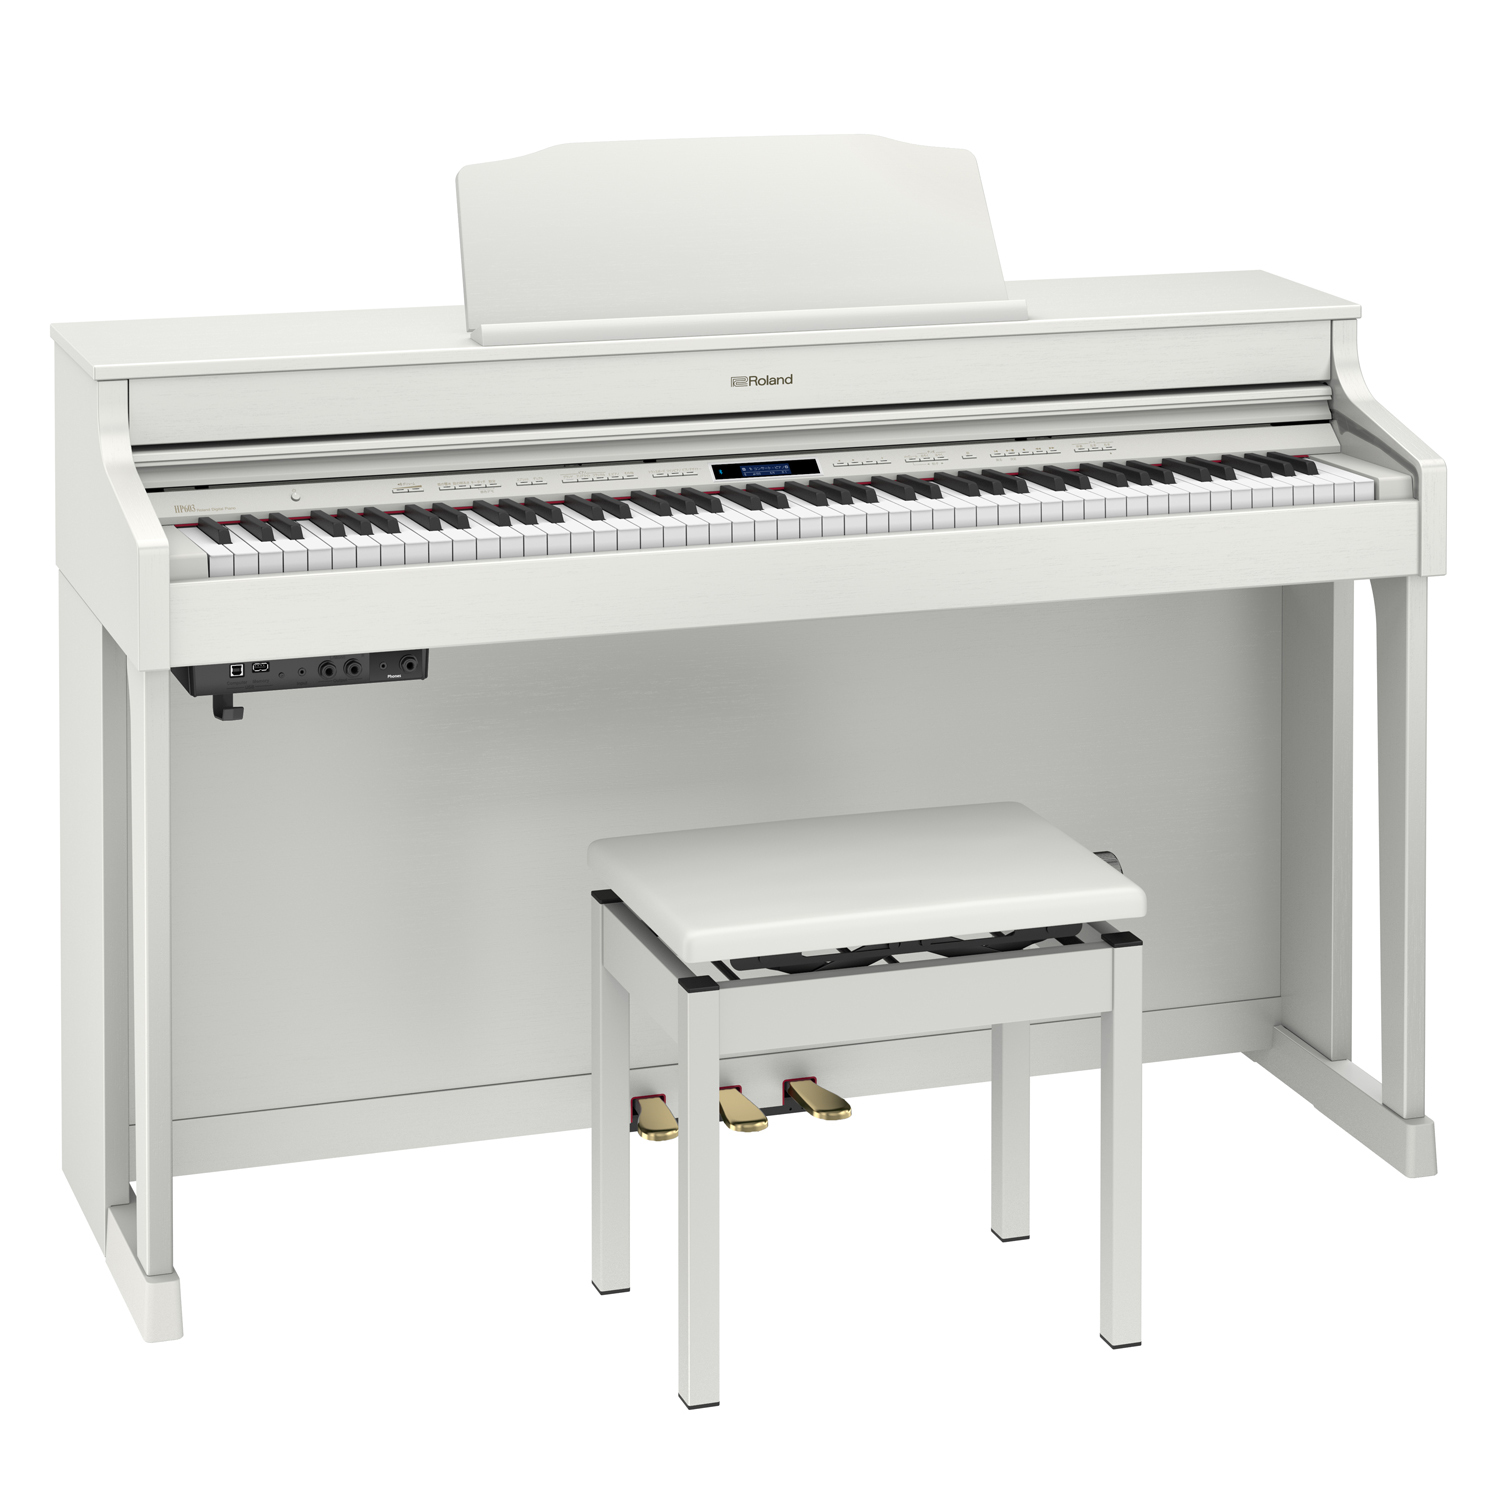 家庭向けデジタルピアノのホワイト・モデルを台数限定で販売